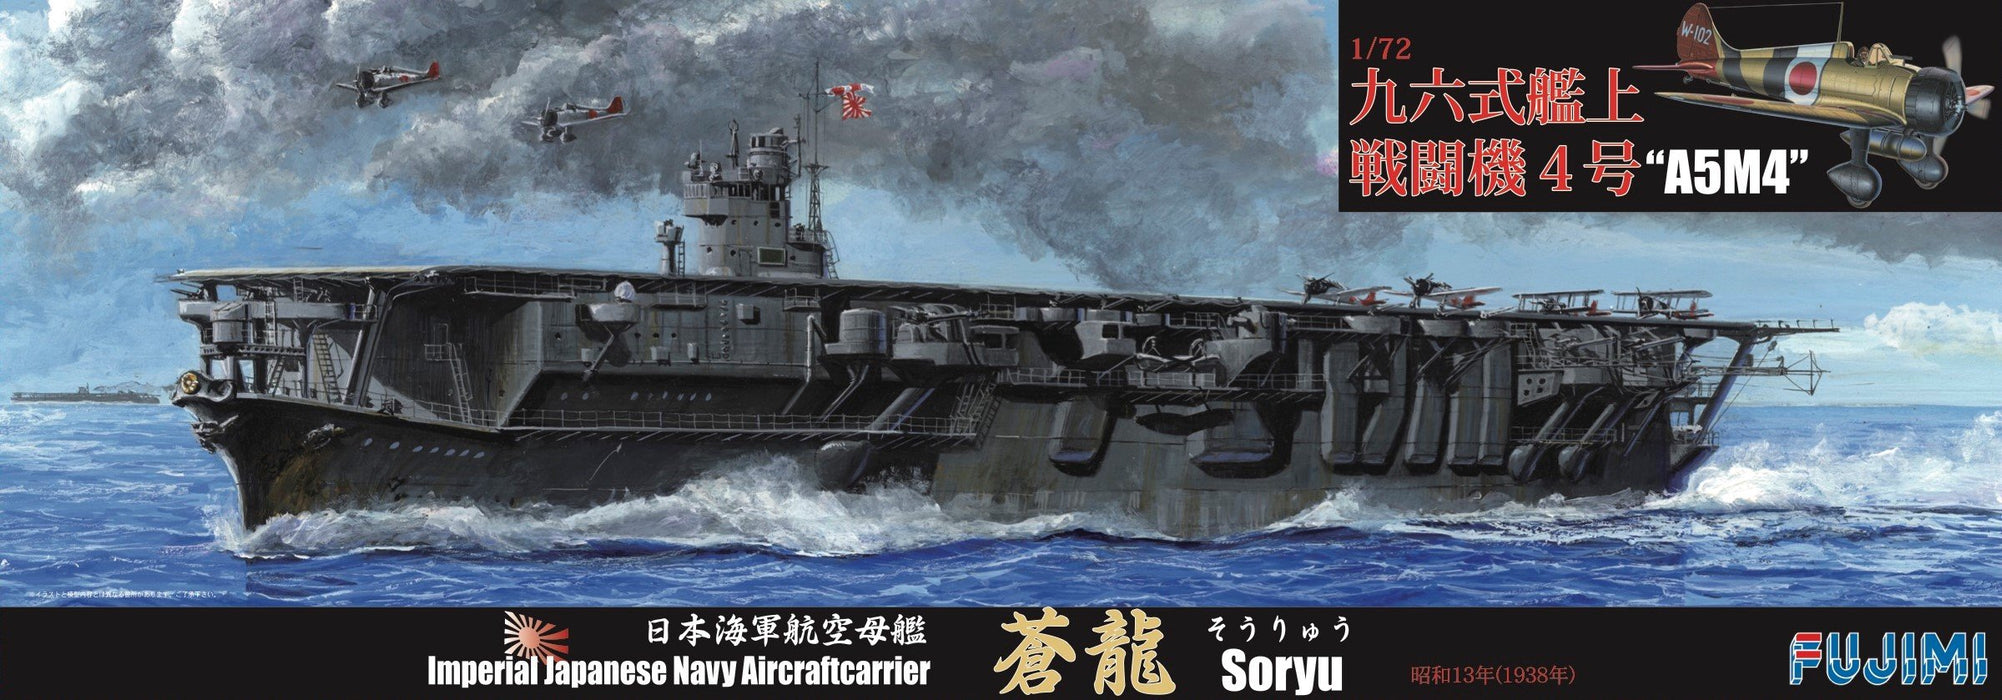 Fujimi modèle 1/700 série spéciale Spot n° 58 porte-avions de la marine japonaise Soryu Showa 13 1/72 quatre-vingt-seize batailles en plastique modèle spécial Sp58